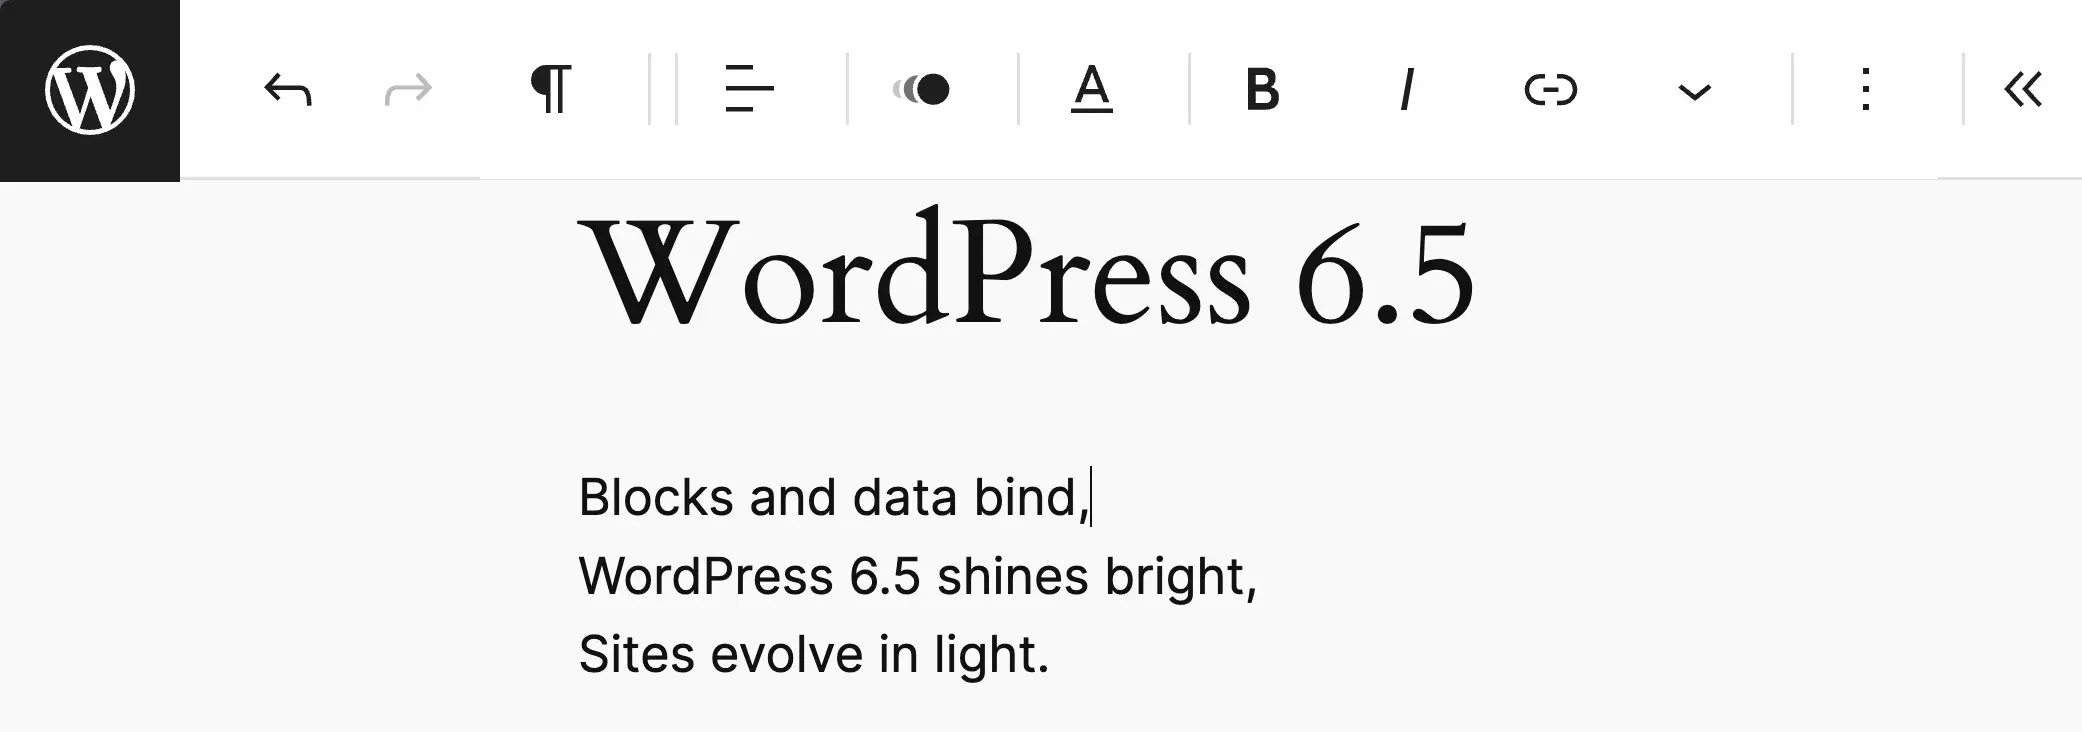 В WordPress 6.5 включен режим без отвлечения внимания, демонстрируется верхняя панель инструментов.